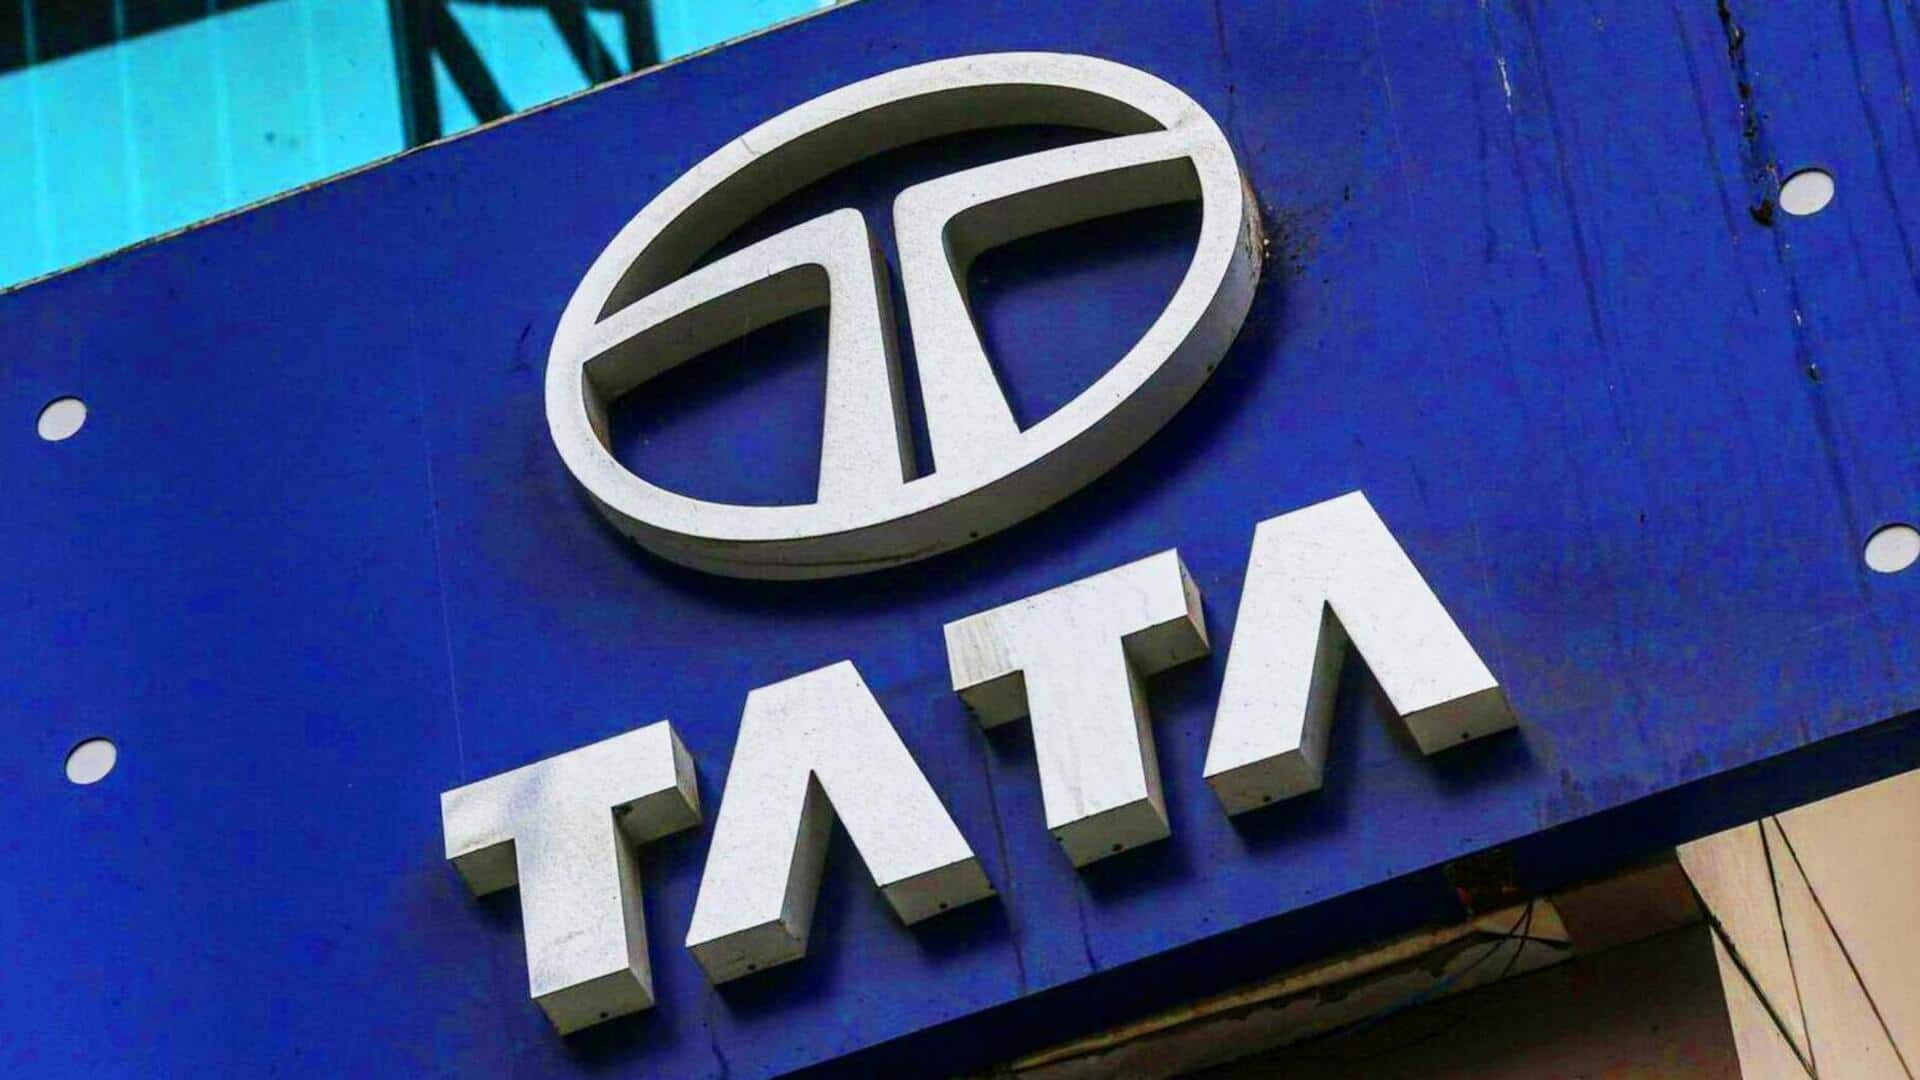 टाटा समूह गुजरात में सेमीकंडक्टर फैक्ट्री का करेगा निर्माण, वाइब्रेंट गुजरात ग्लोबल समिट में हुई घोषणा 